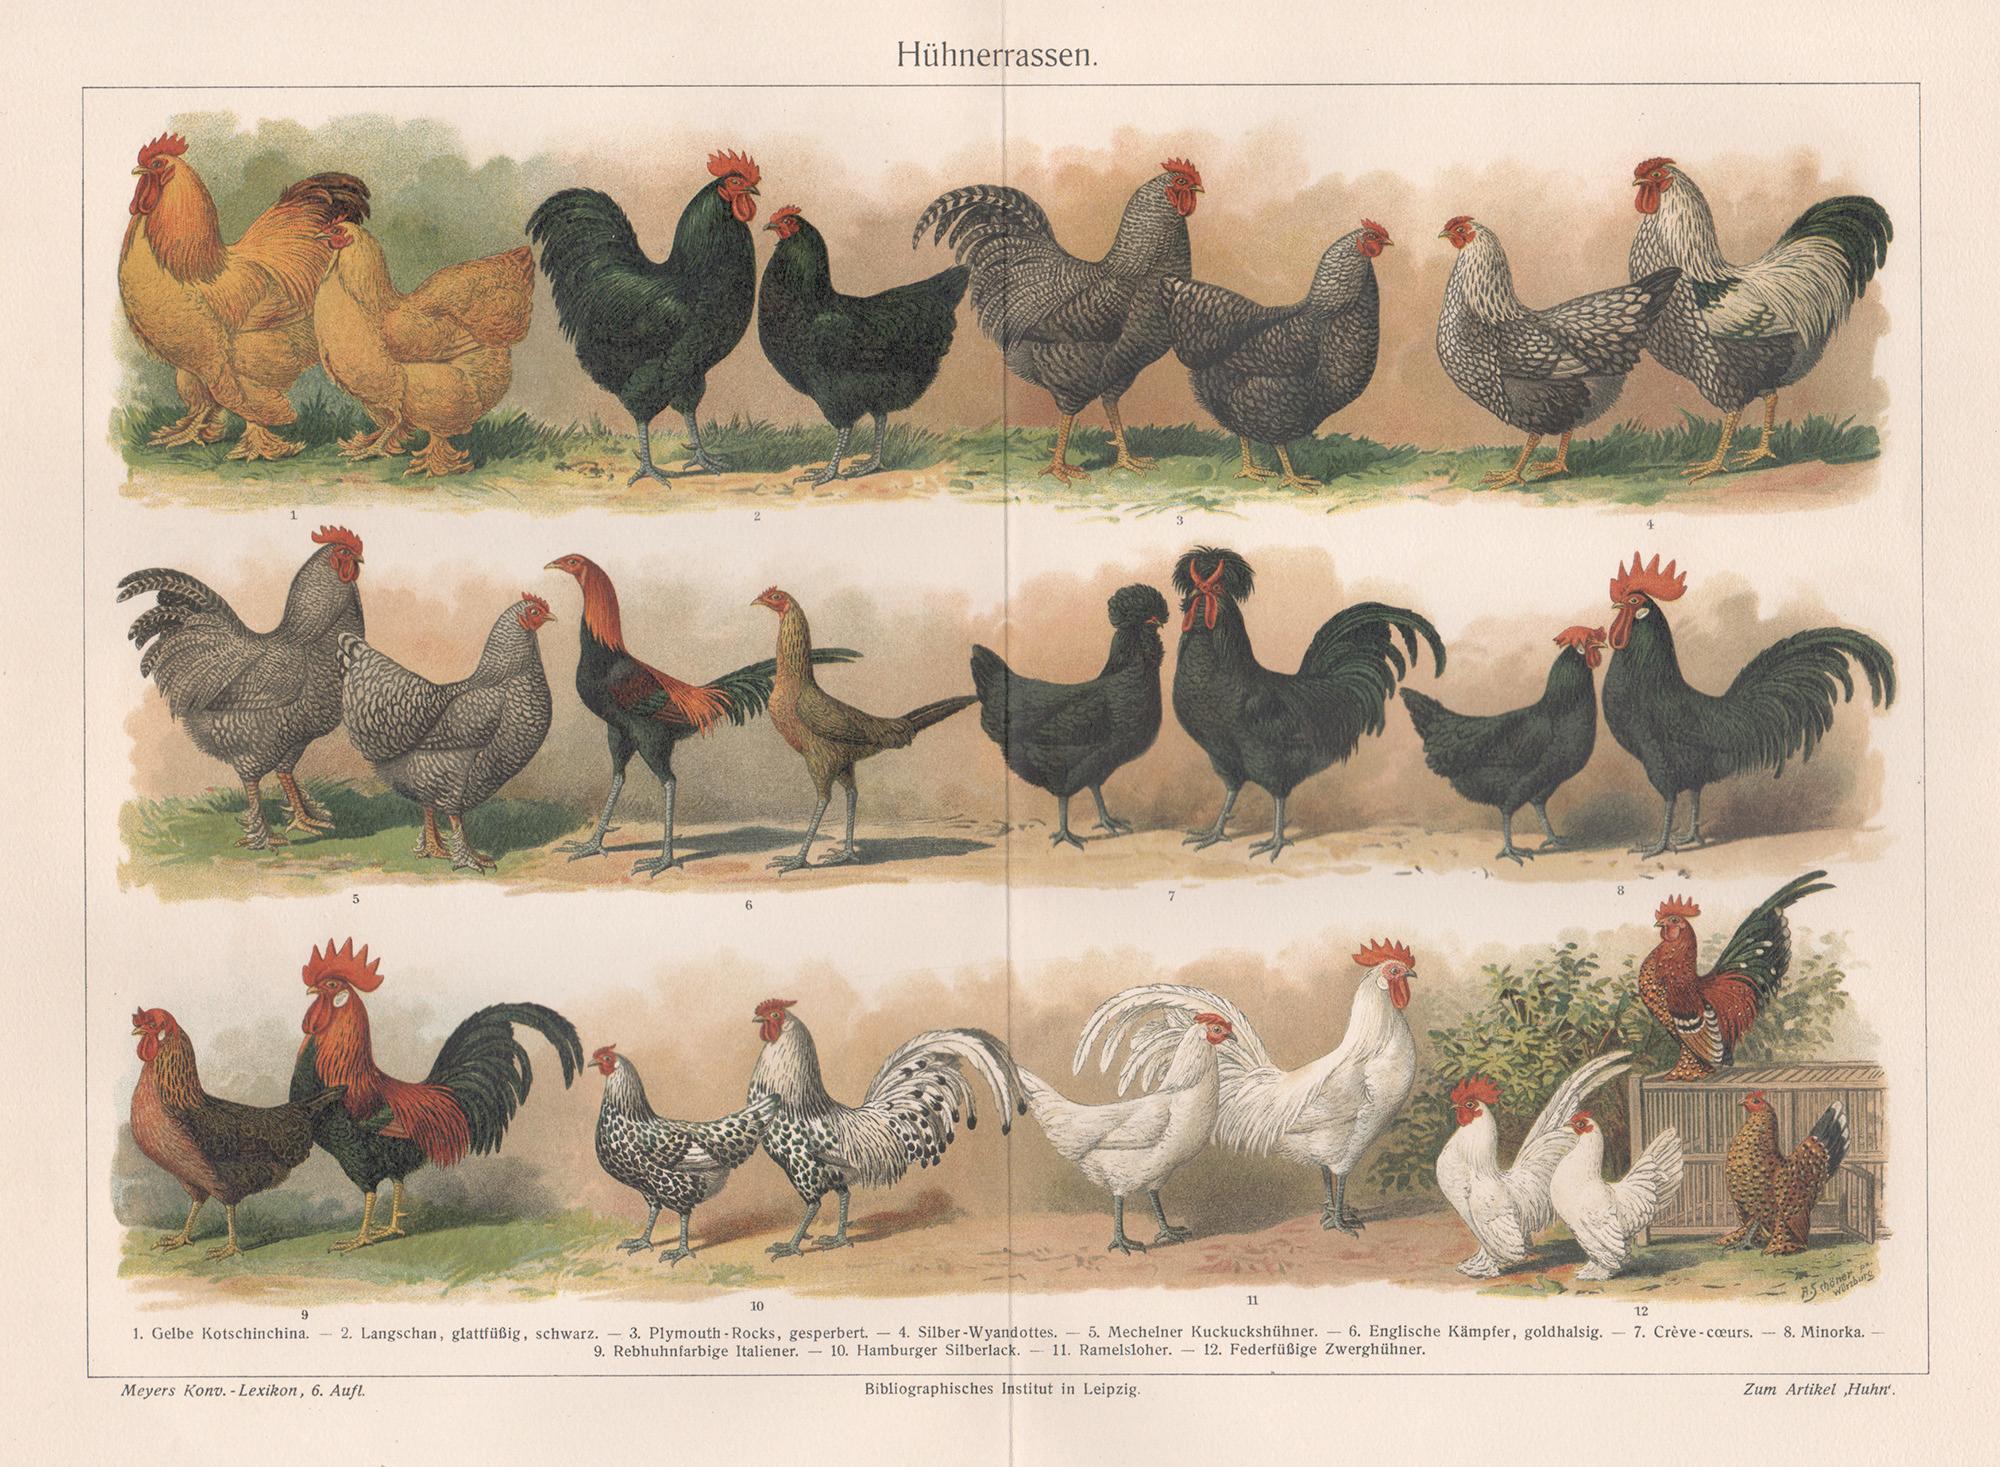 Unknown Print - Huhnerrassen (Poultry Breeds), German antique chicken bird chromolithograph